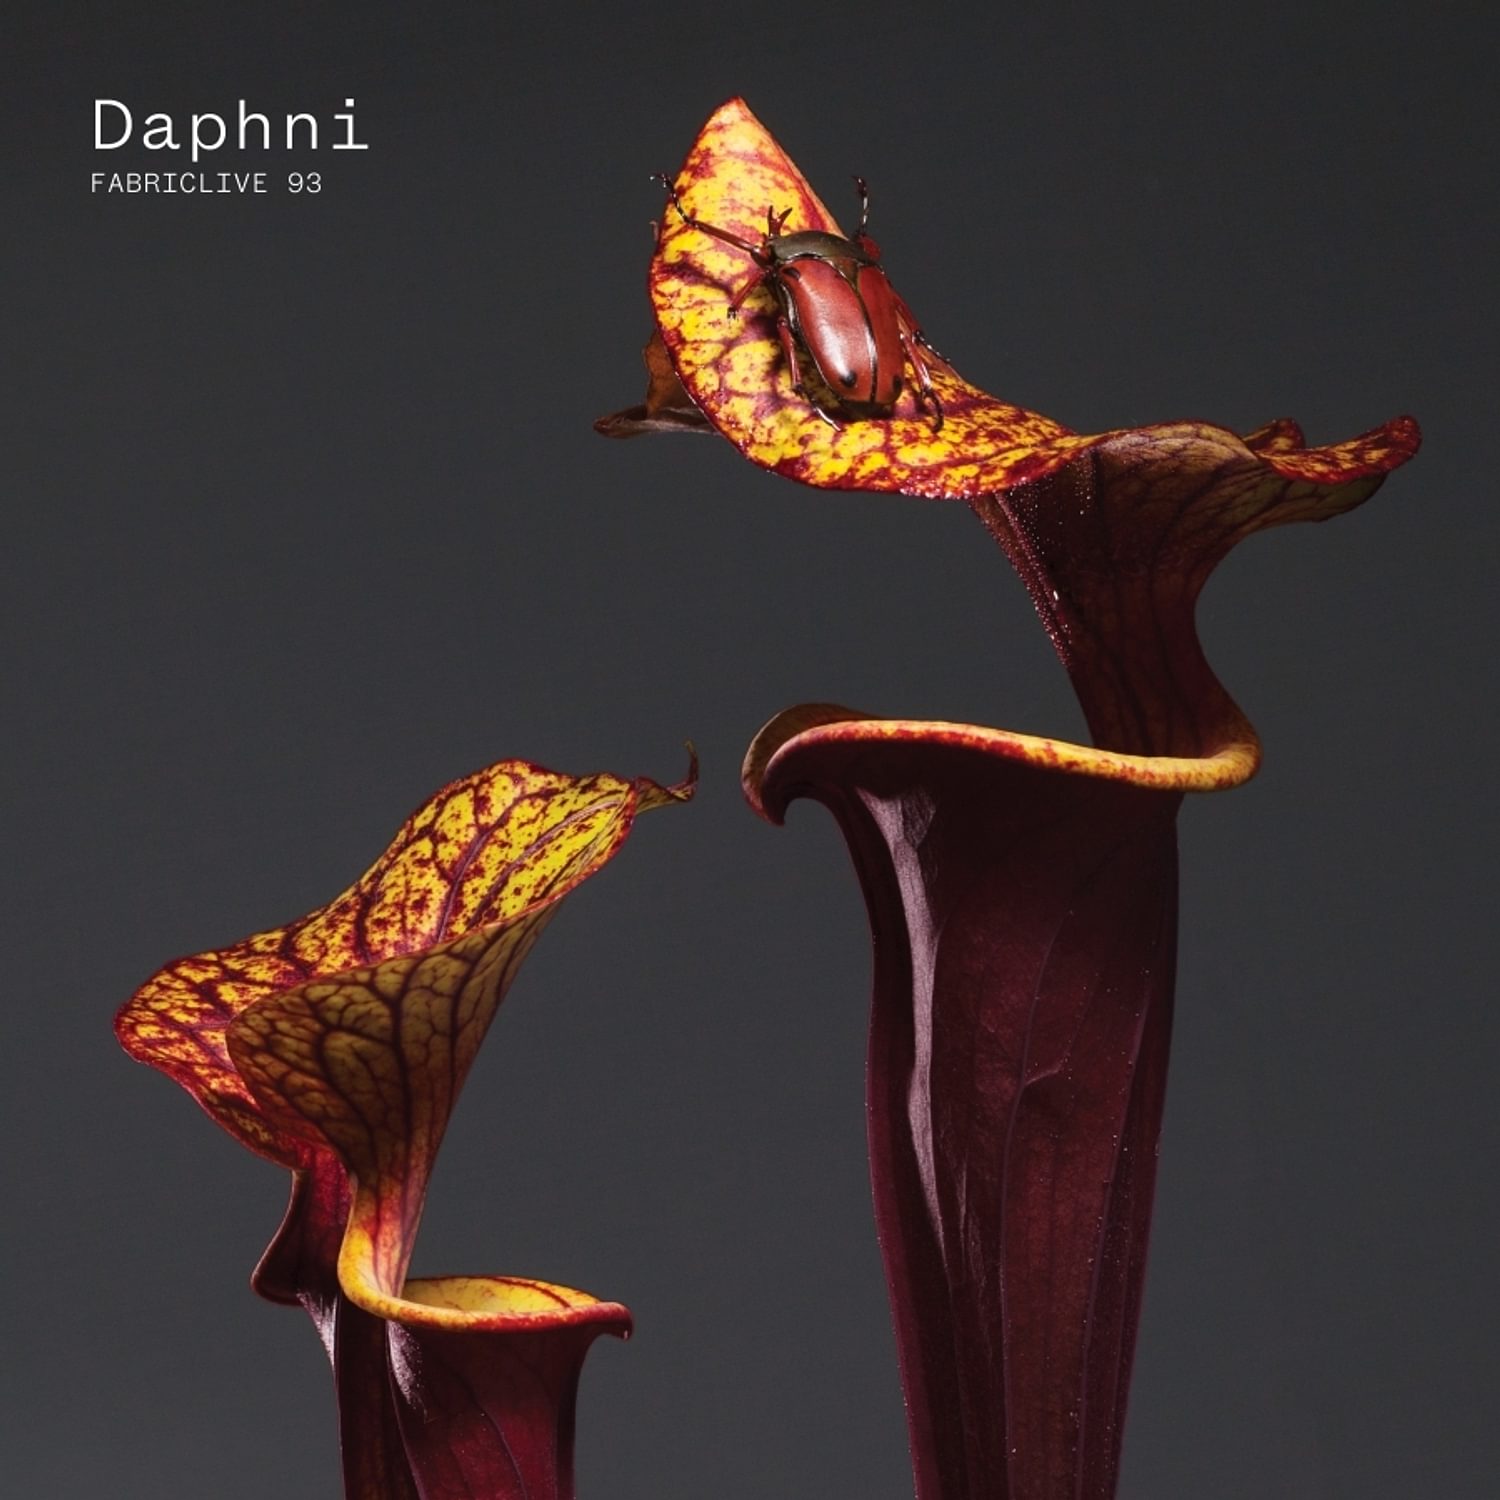 Daphni – FABRICLIVE 93